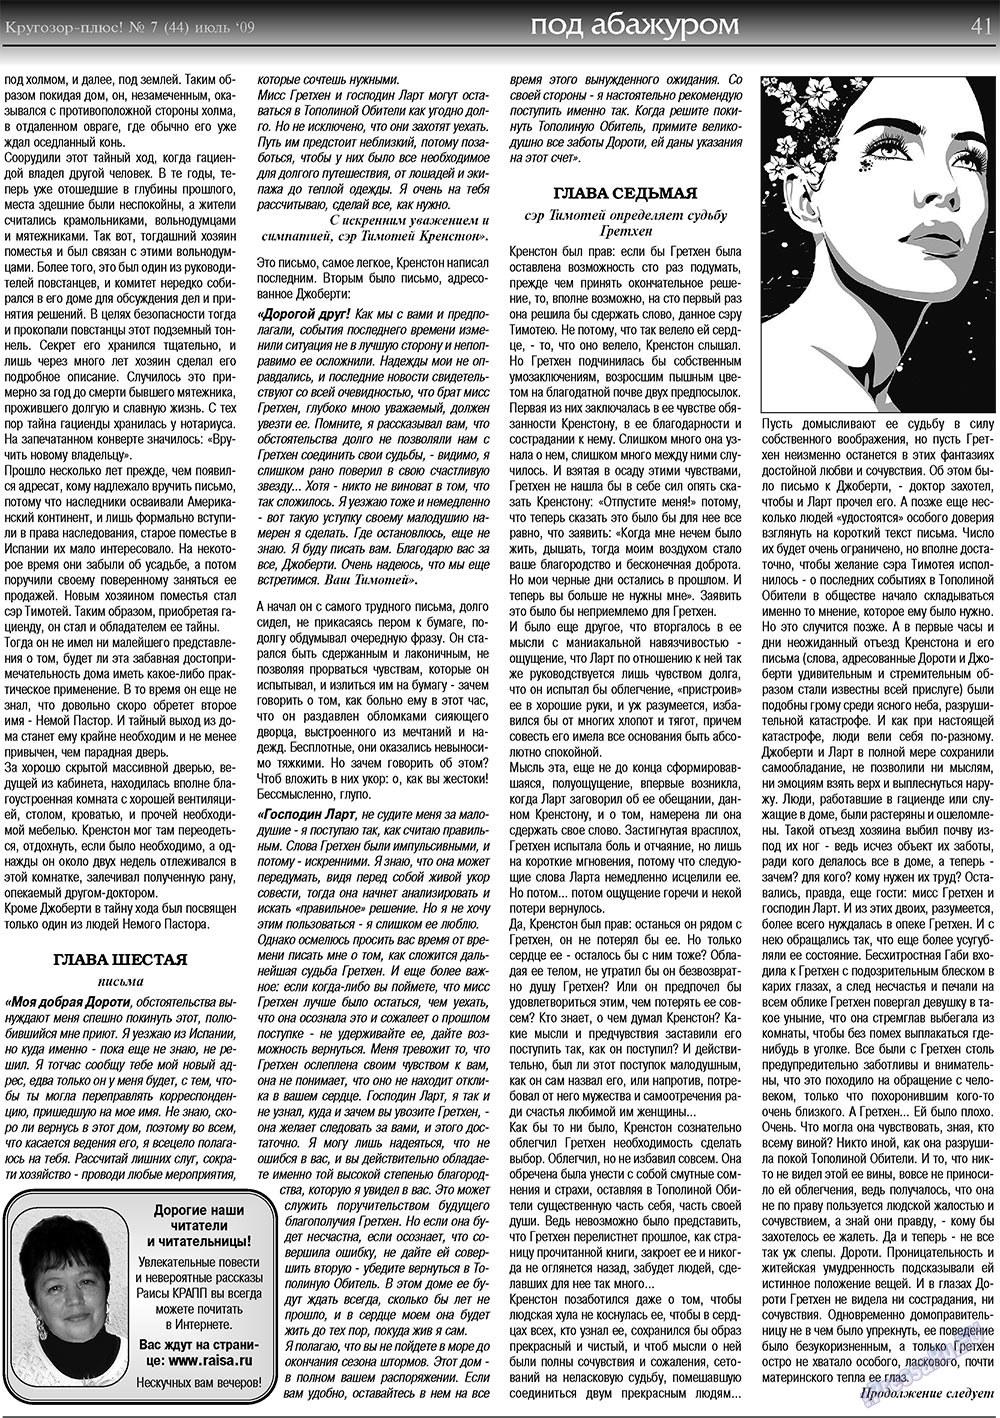 Кругозор плюс!, газета. 2009 №7 стр.41